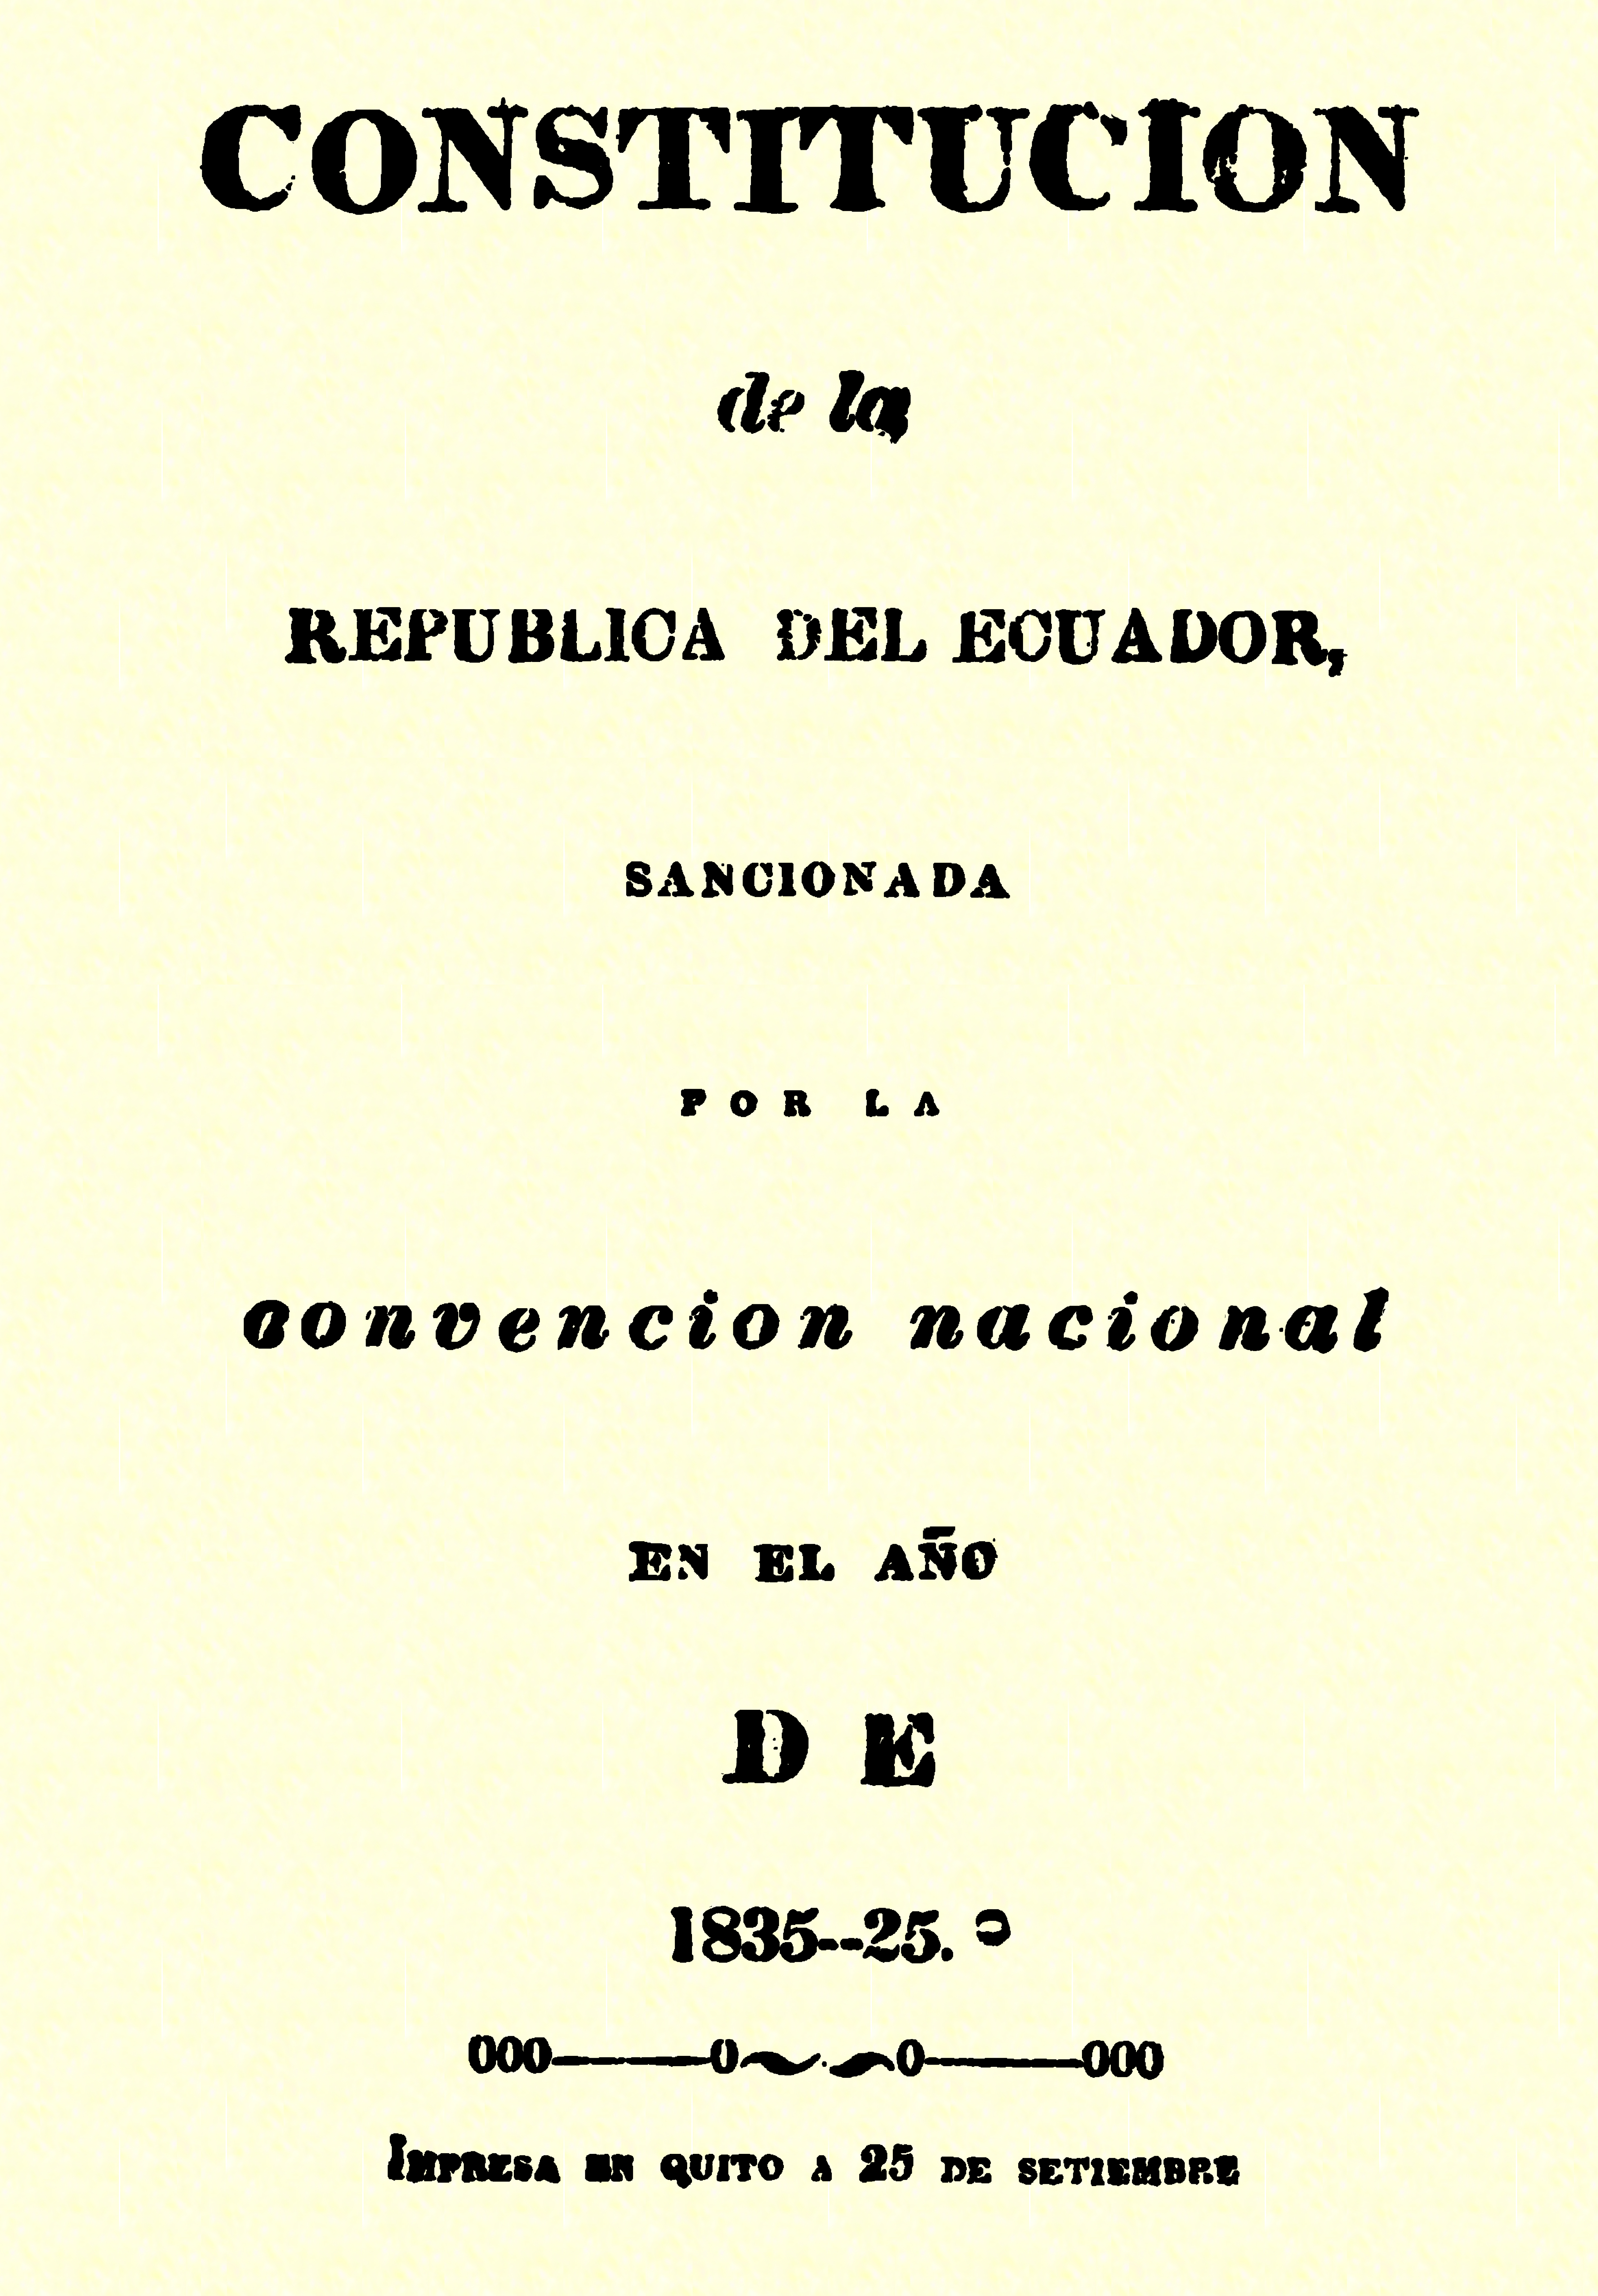 Constitución de la República del Ecuador : sancionada por la Convención Nacional en el año de 1835-25.